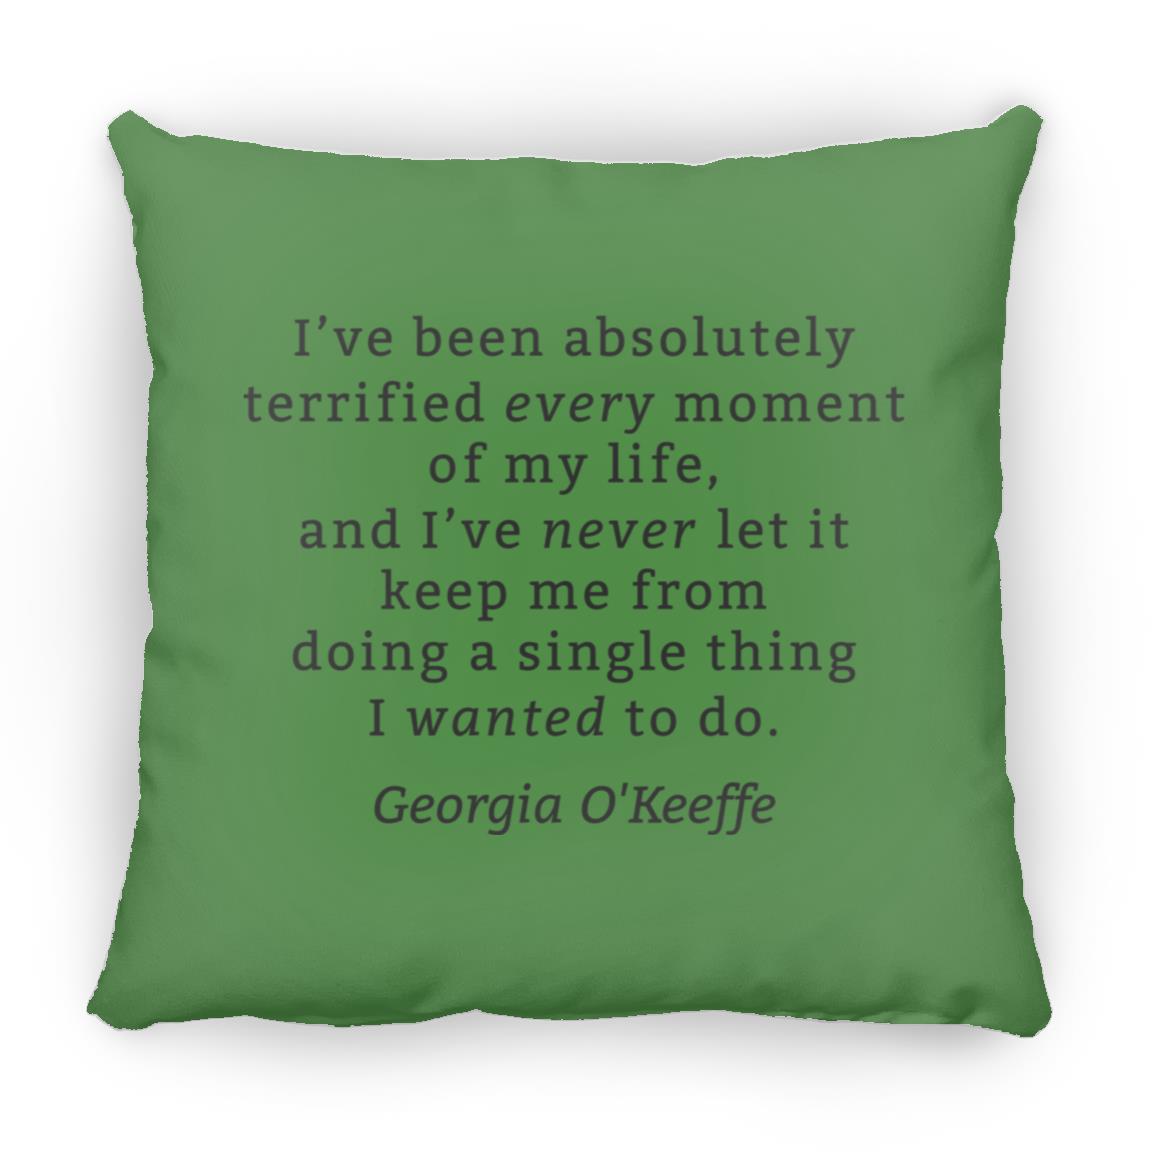 Georgia O'Keeffe Throw Pillow